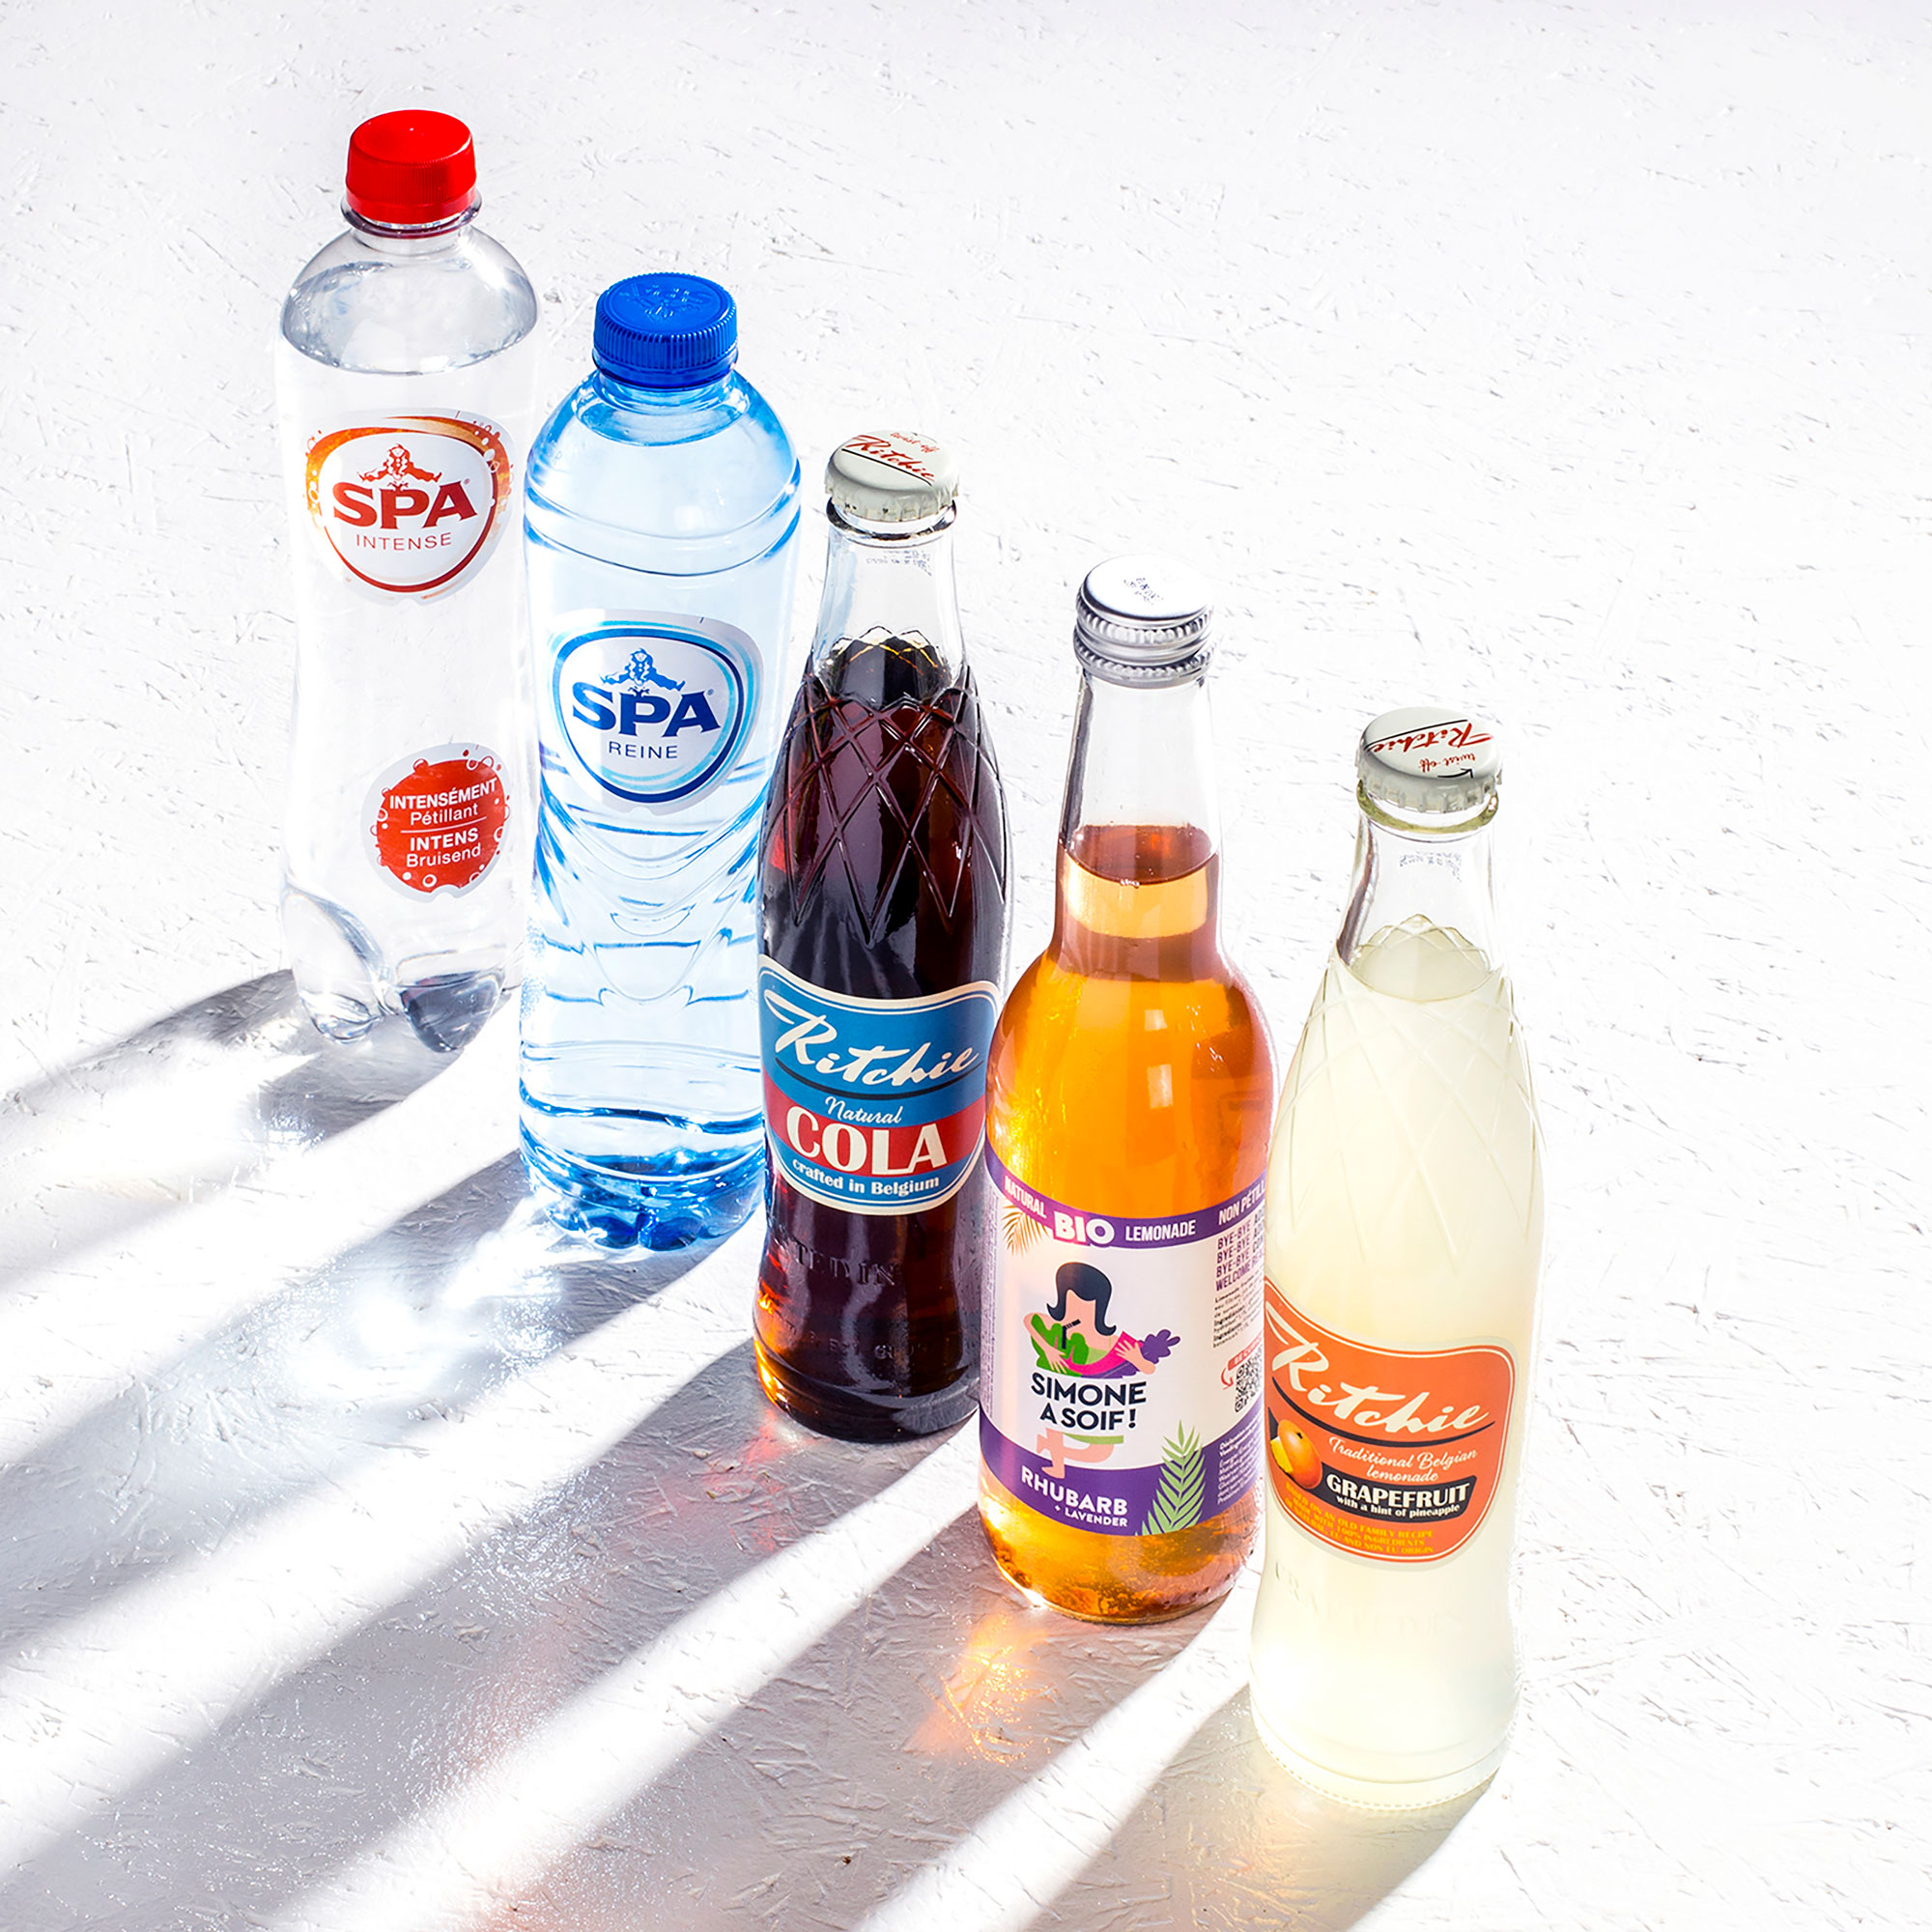 Water & Soda Belgian drinks available to rent / verhuur / location at 50.8 Studio • Belgïe, Belgique, Belgium, Catering, Huur, Location, Louer, Only in, Photo, Rent, Studio, Verhuur, Video